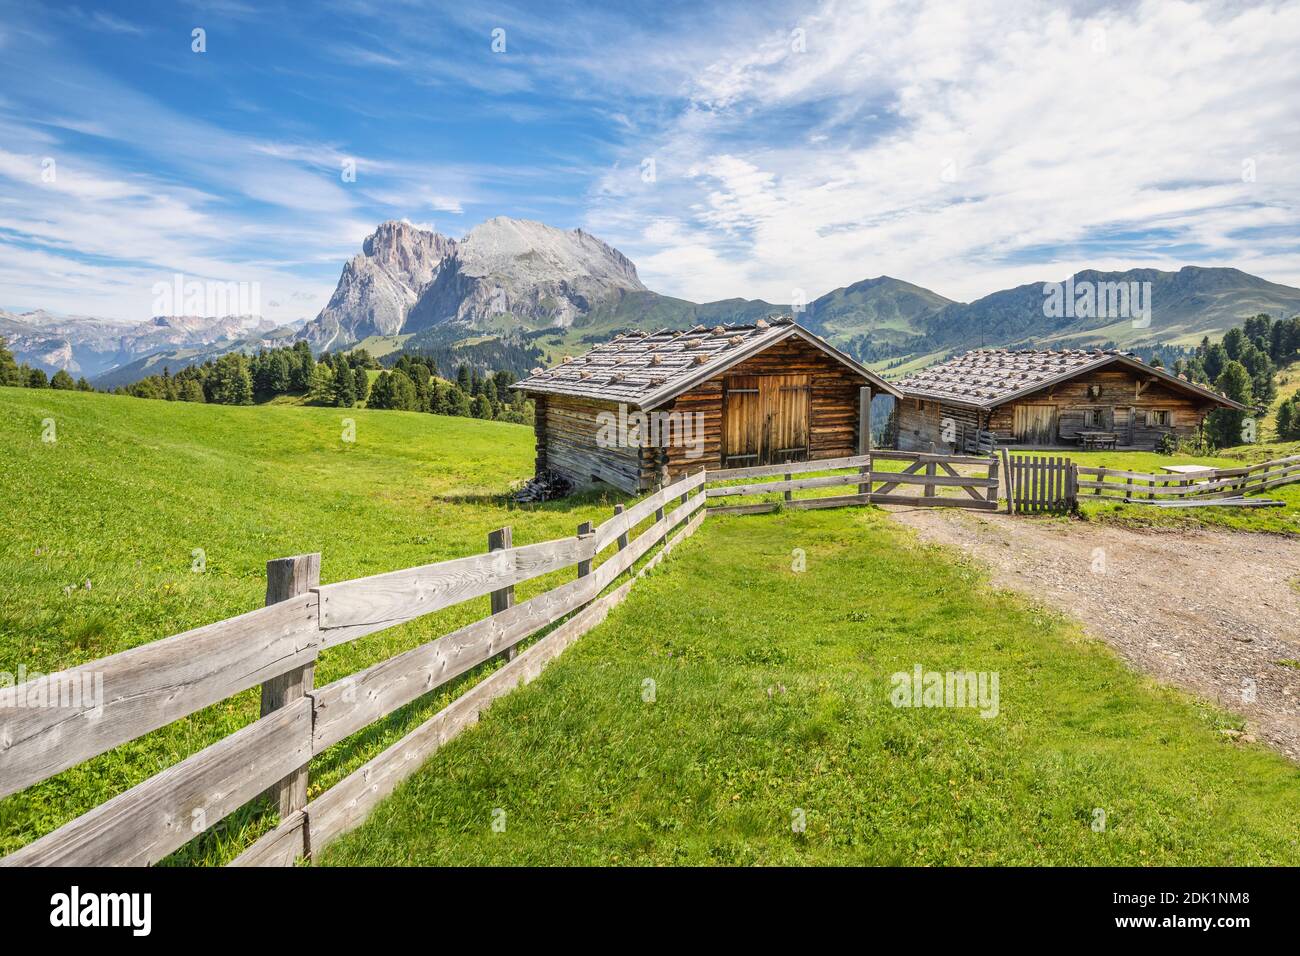 Traditionelle Berghütten auf den Weiden der seiser alm, mit dem Plattkofel im Hintergrund, Provinz bozen, Südtirol, Italien, Europa Stockfoto